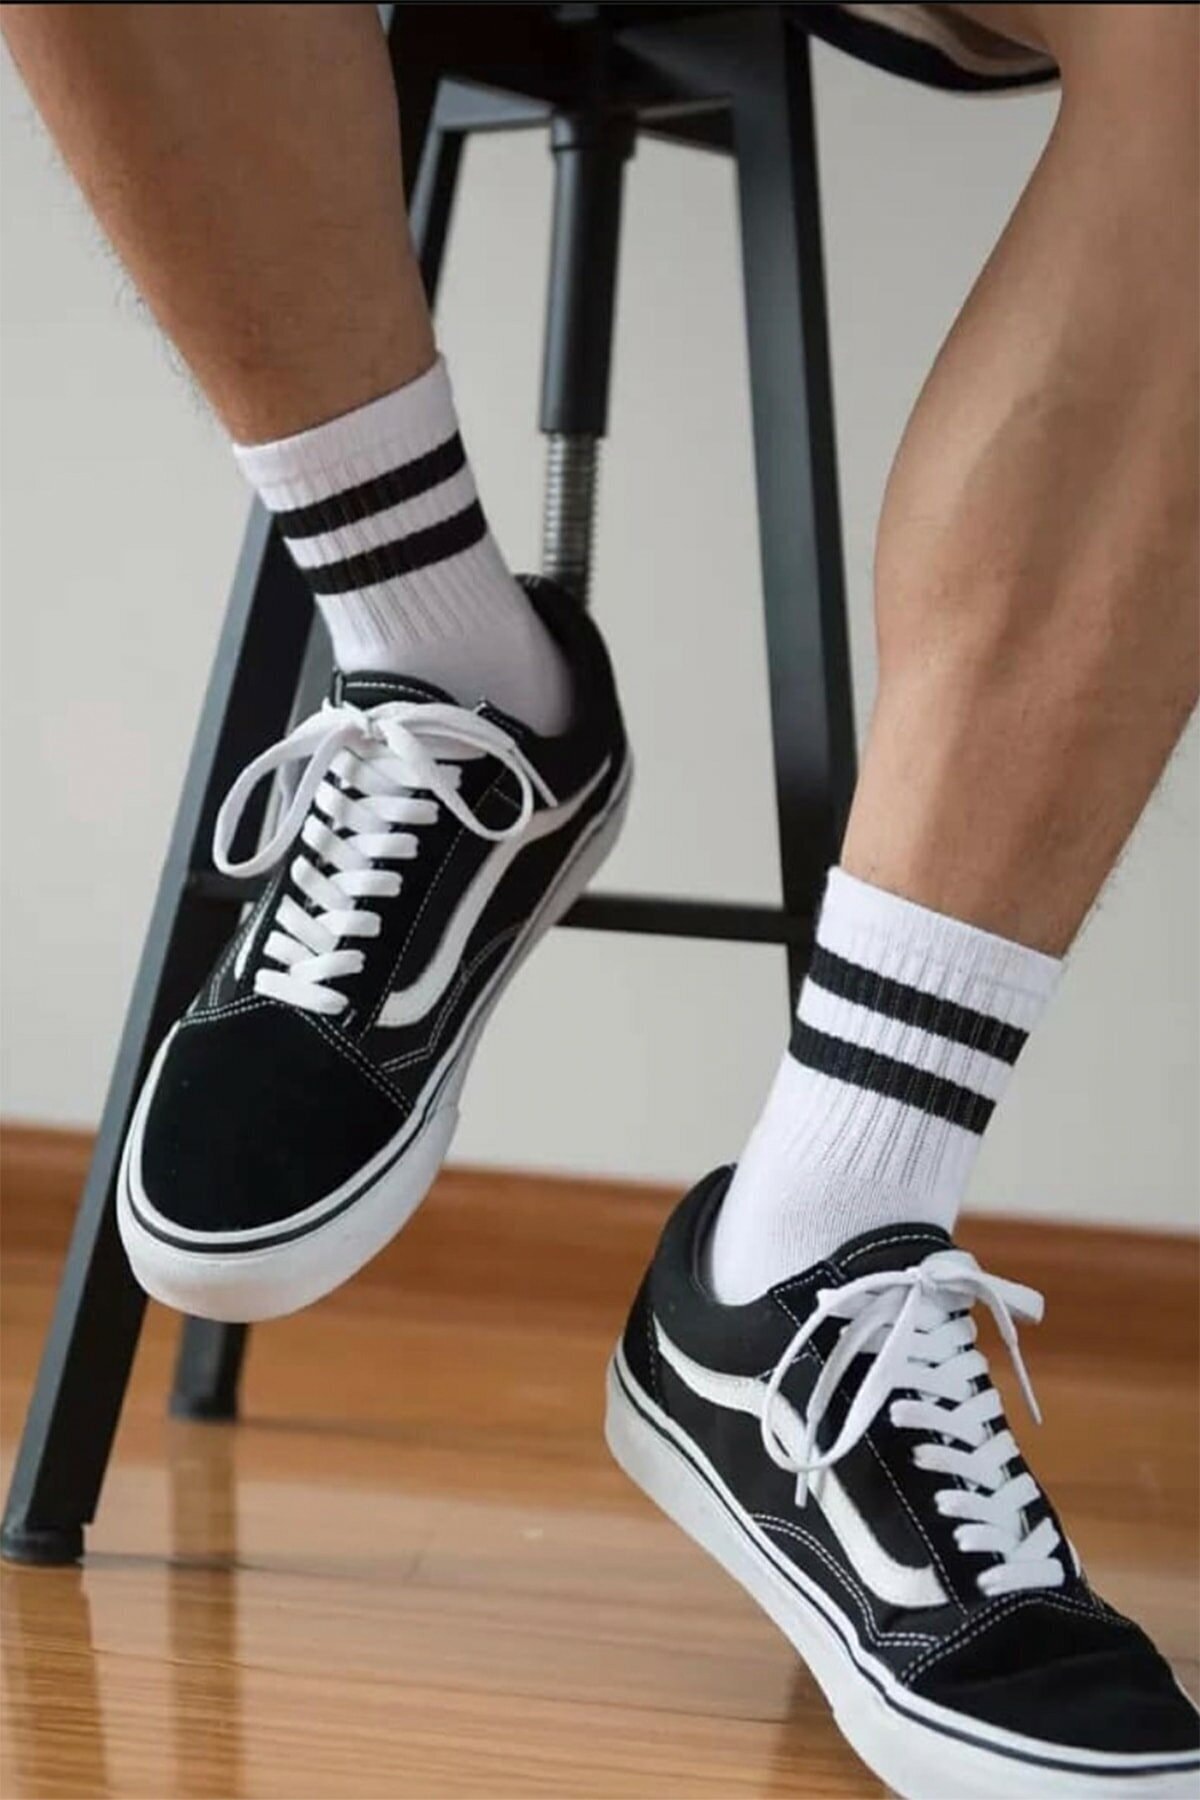 Peri Çorap 3' Lü Siyah Şerit Desenli Beyaz Soket Çorap